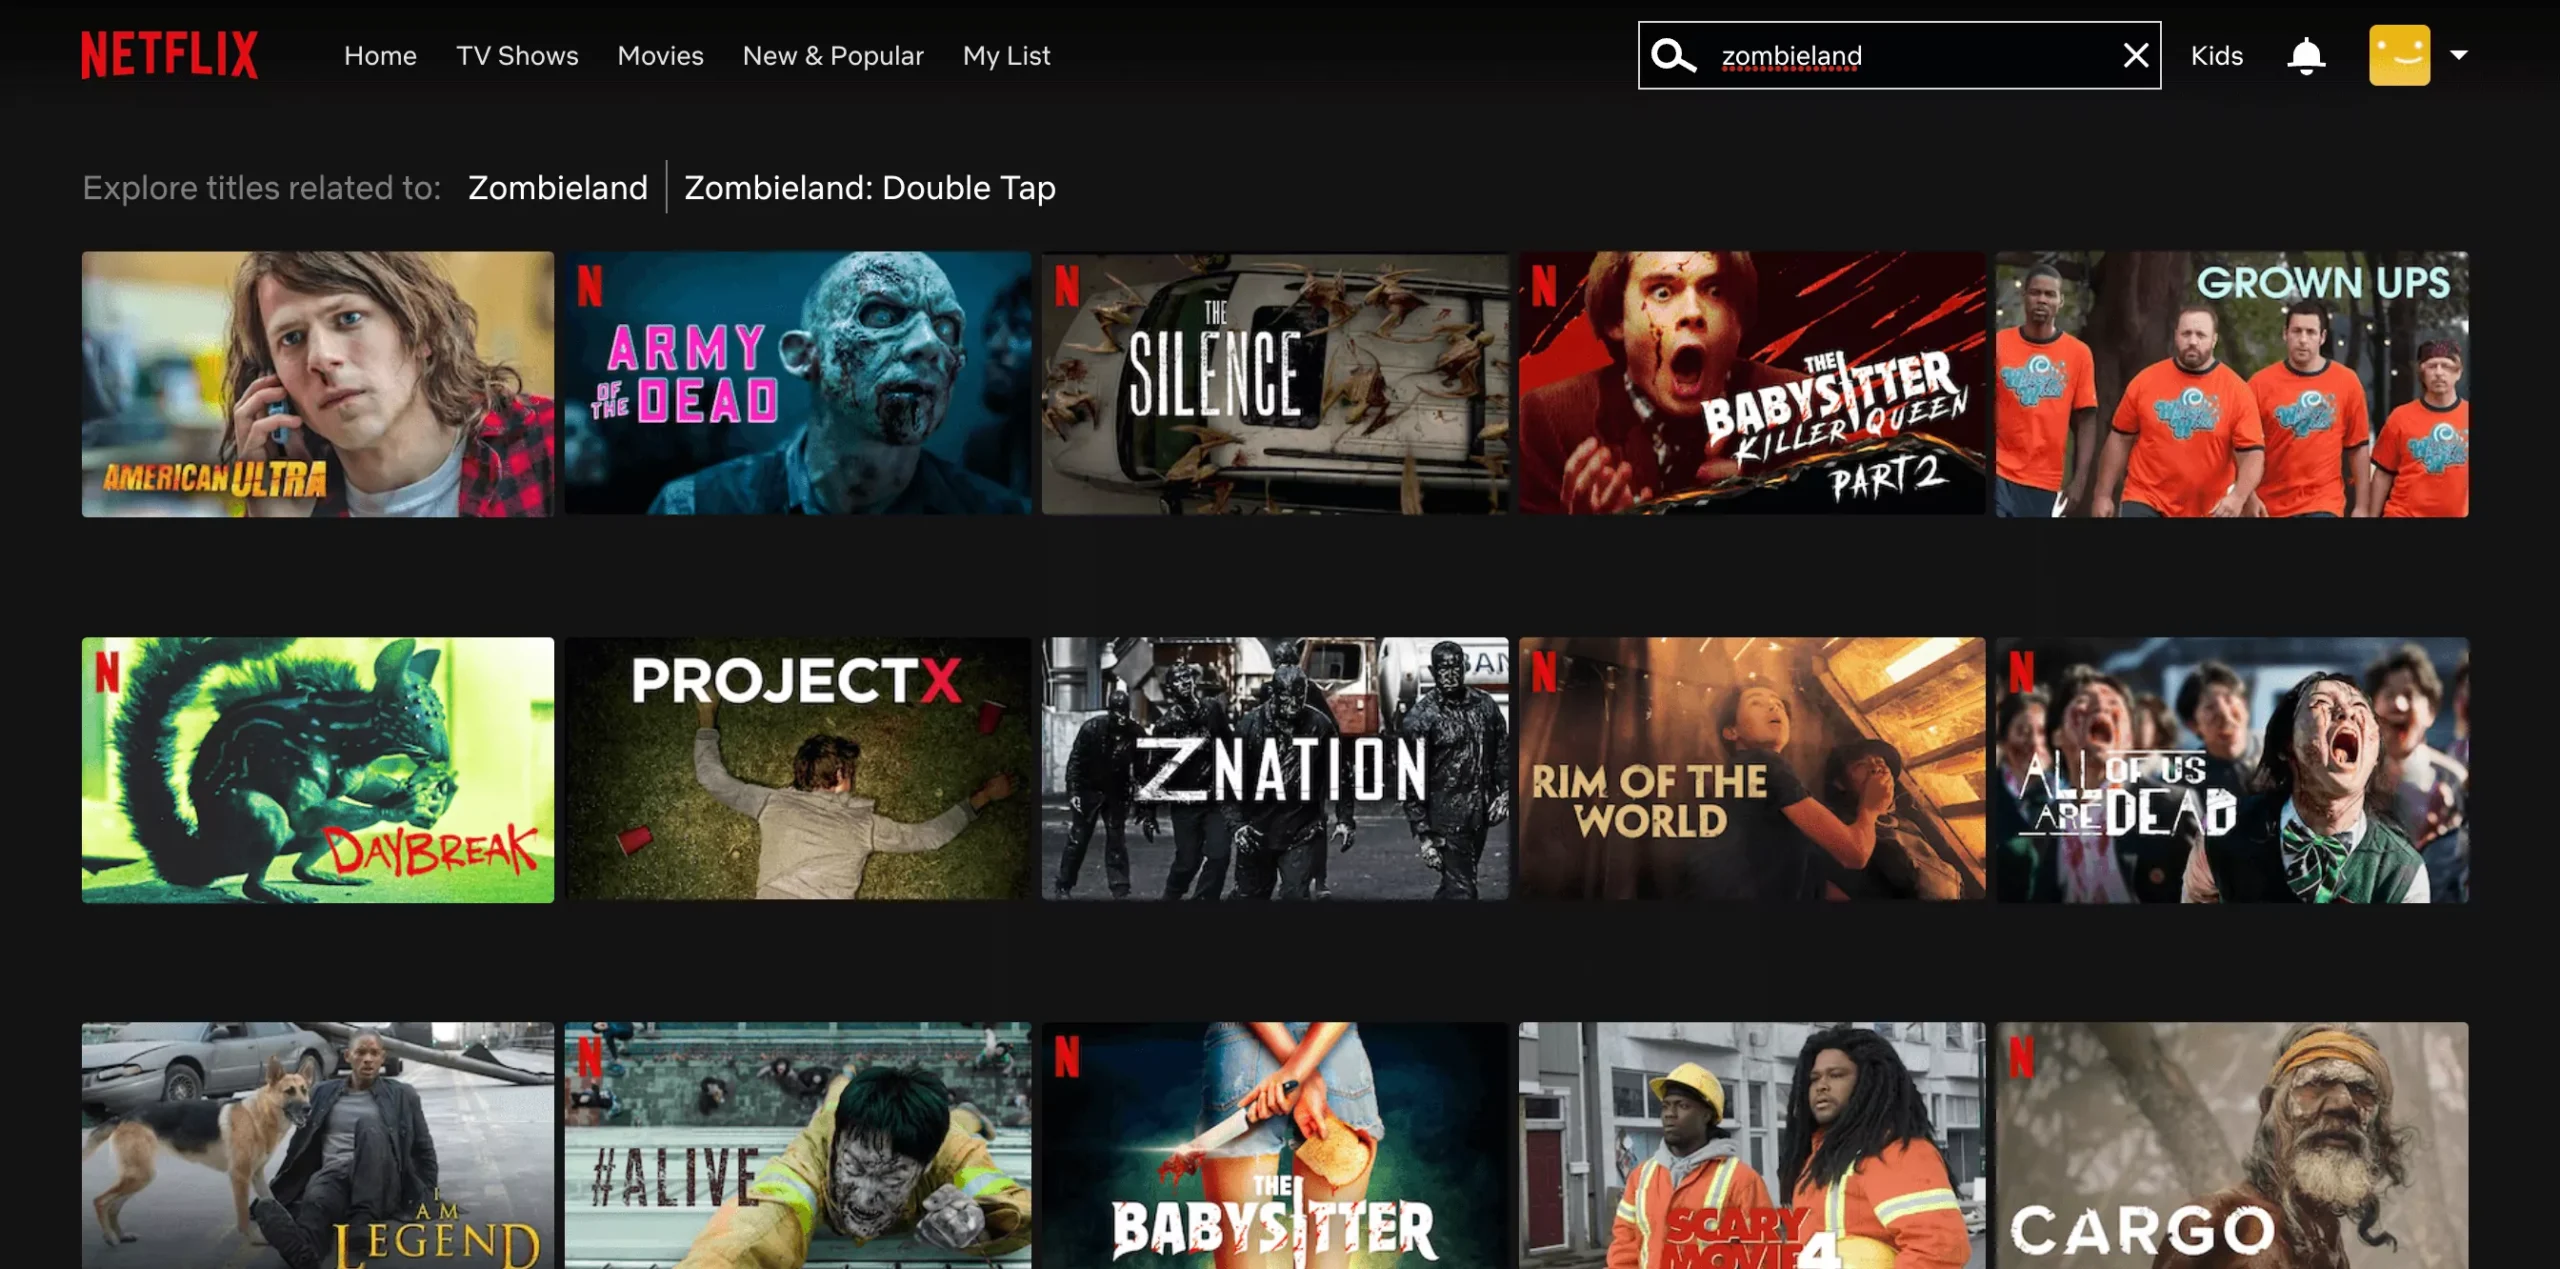 ist-Zombieland-auf-Netflix-us